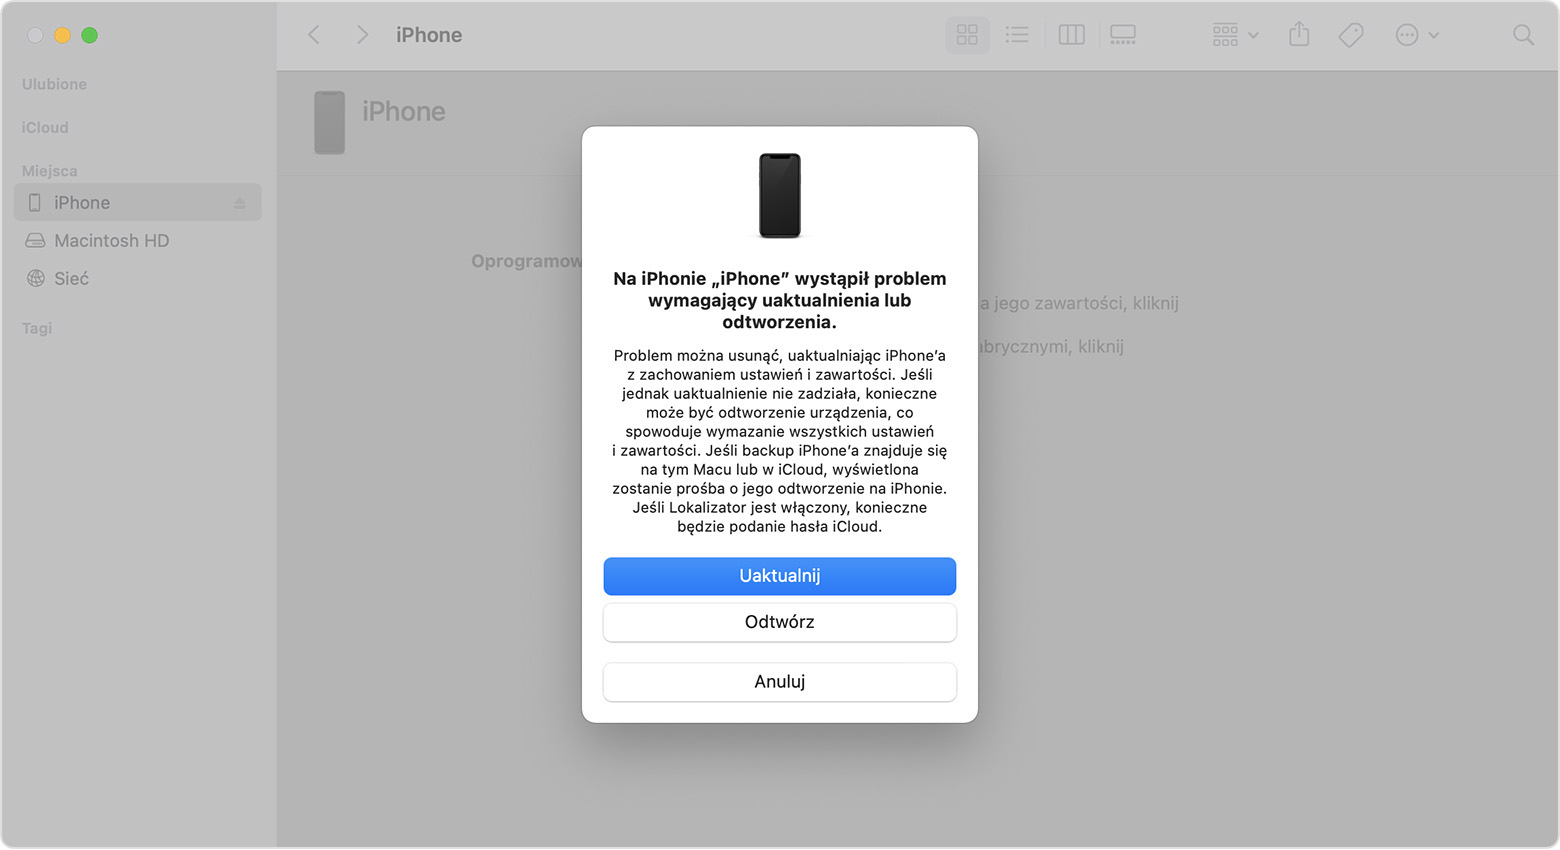 Okno Findera wyświetlające monit z opcjami uaktualniania lub odtwarzania telefonu iPhone. Wybrana jest opcja Uaktualnij.